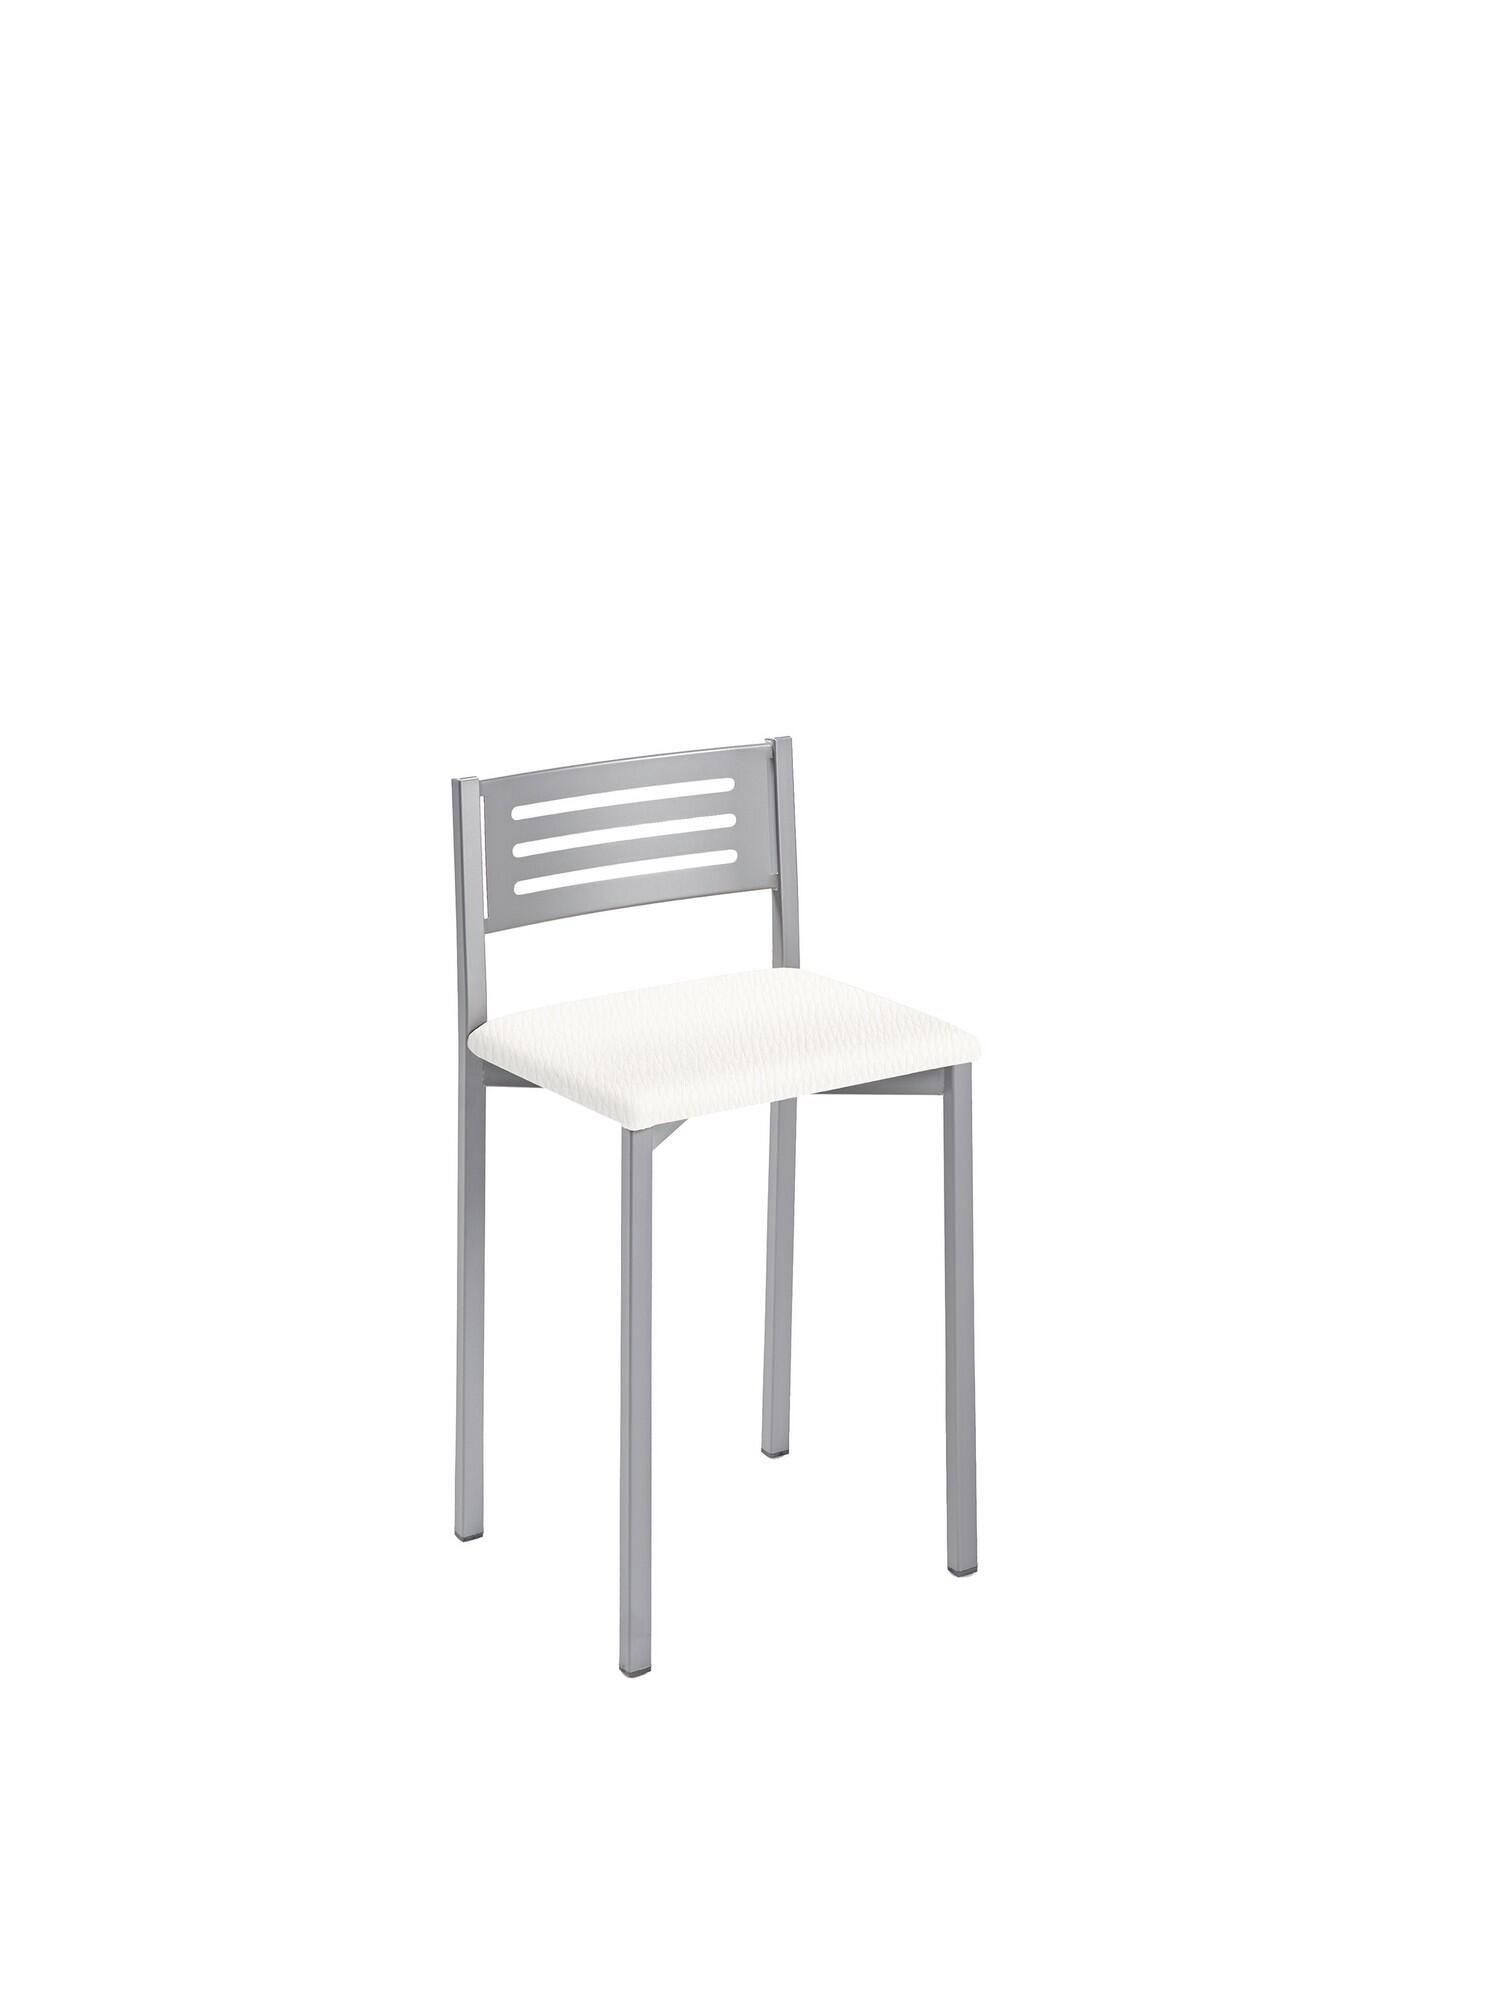 Taburete de estructura color epoxi aluminio y asiento blanco de 33 x 47 cm